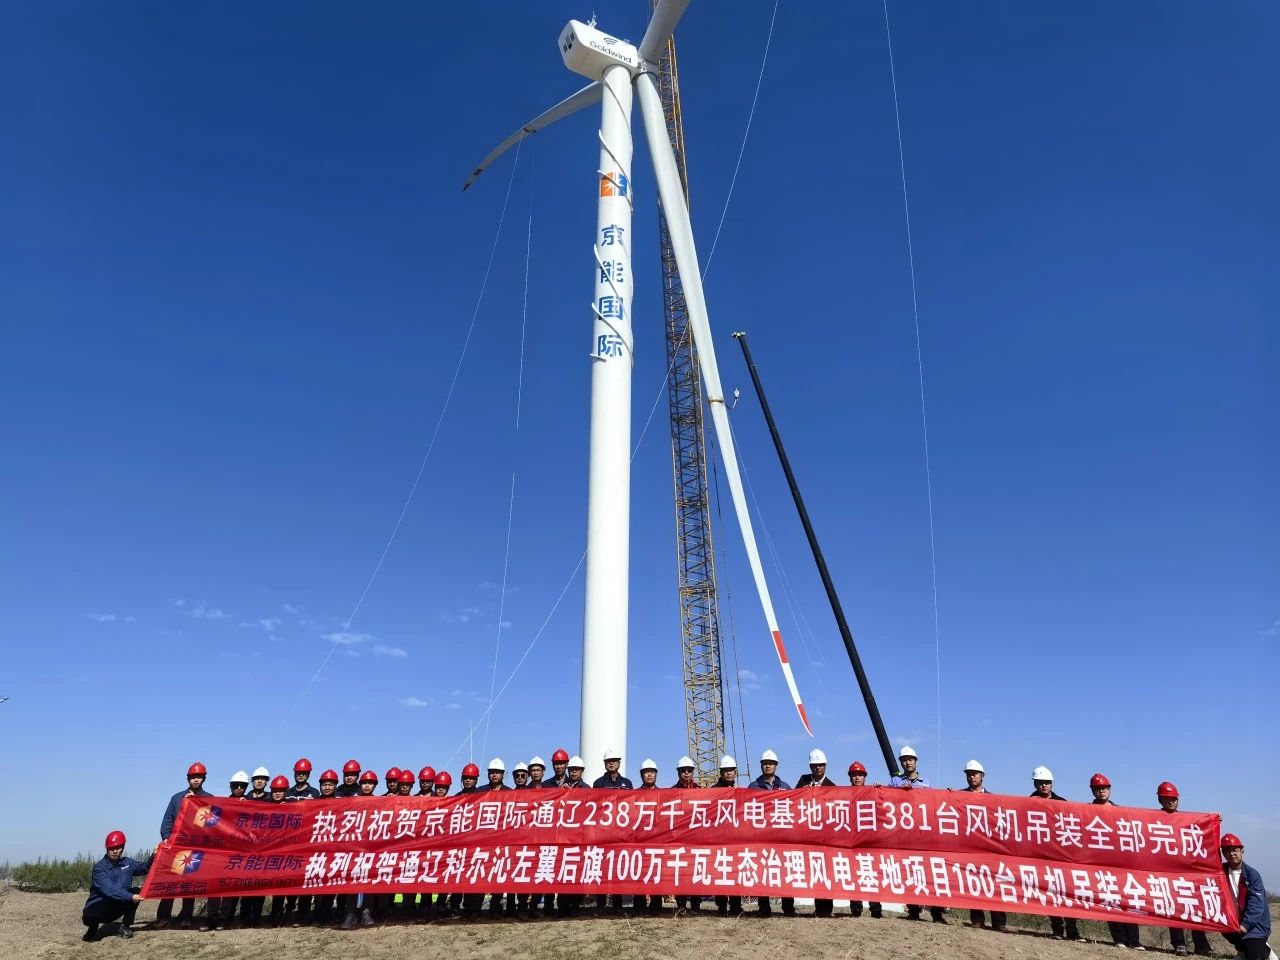 京能国际内蒙古通辽2.38GW风电基地项目381台风力发电机组吊装全部<em>完成</em>